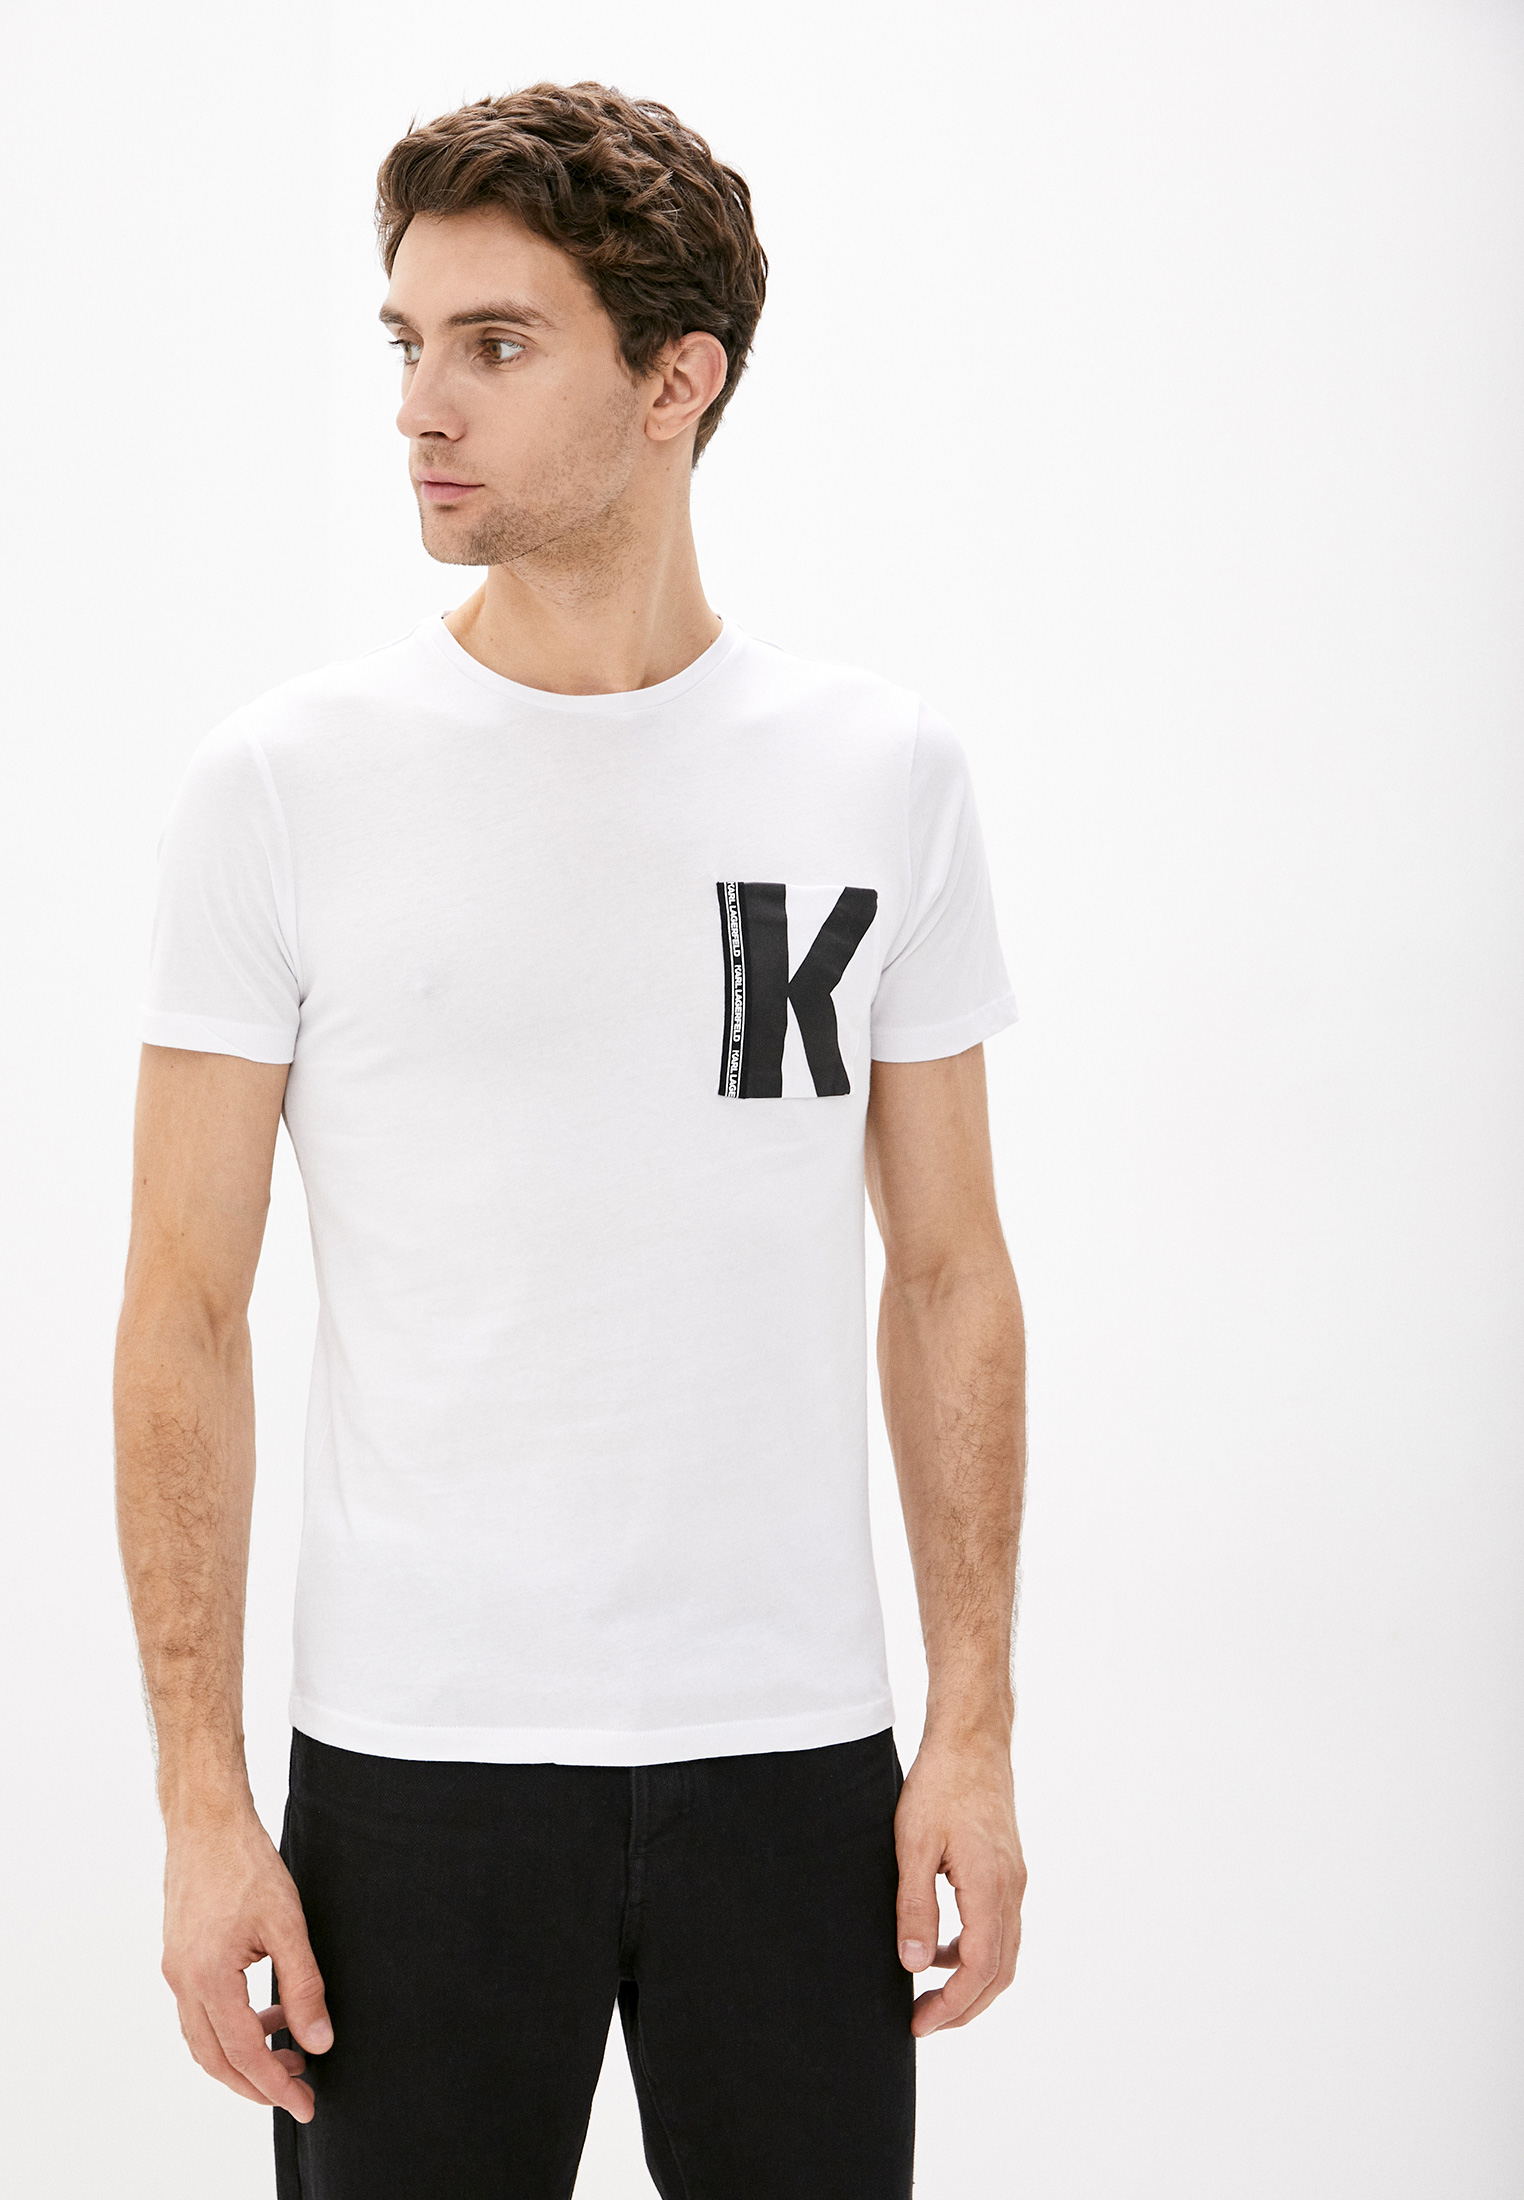 Футболки лагерфельд купить. Karl Lagerfeld футболка мужская. Karl Lagerfeld белая футболка. Karl Lagerfeld футболка мужская белая.